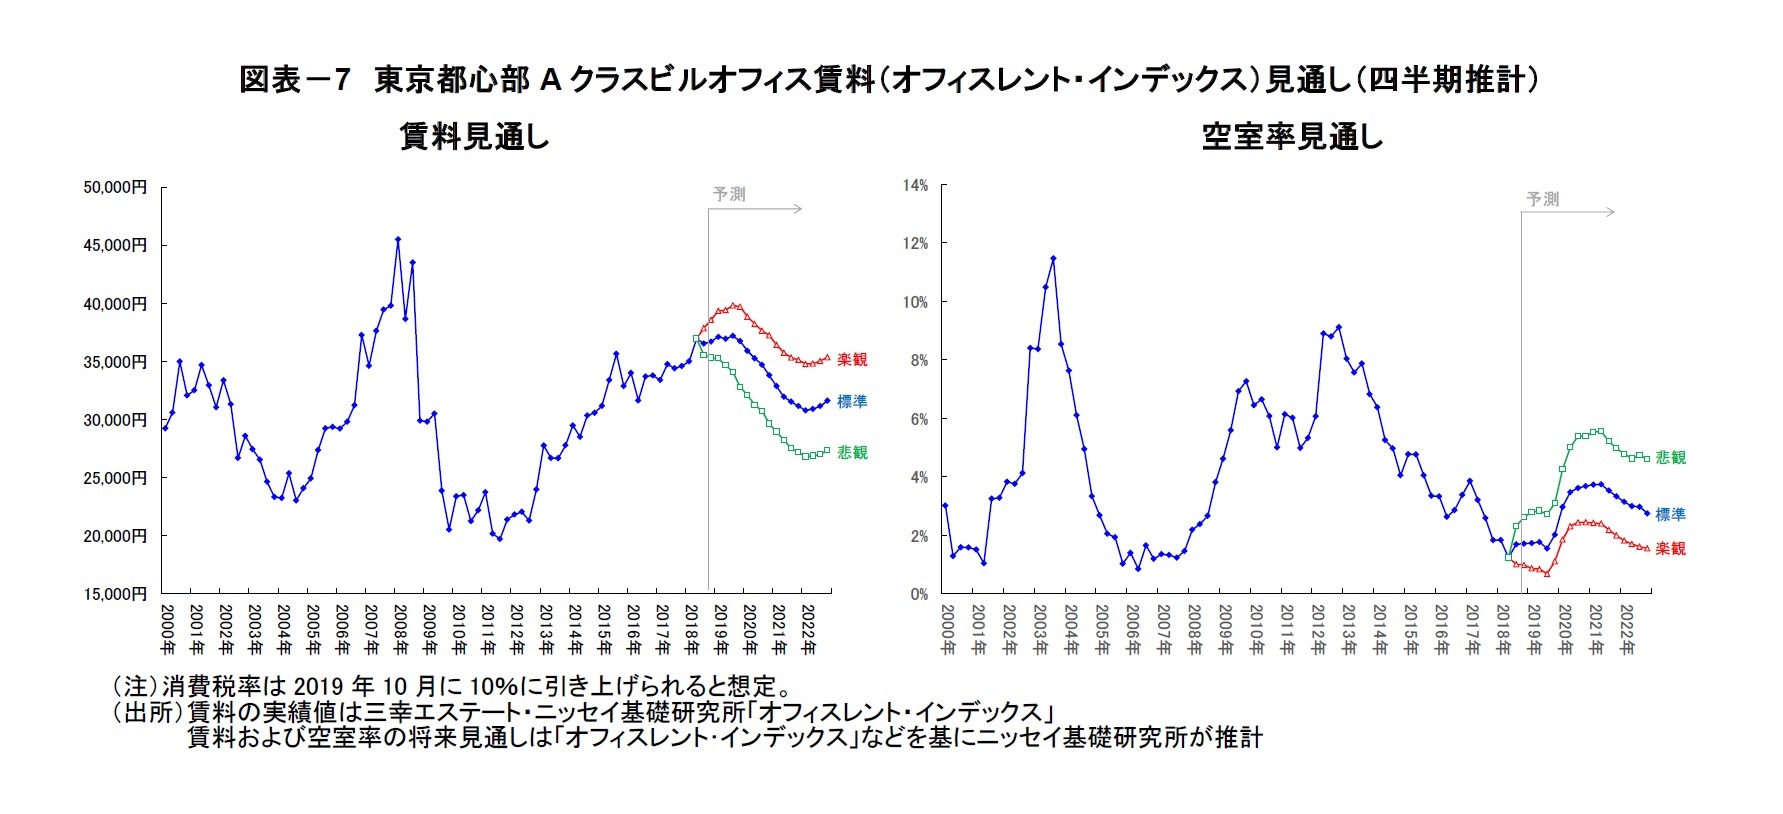 図表－7　東京都心部Aクラスビルオフィス賃料（オフィスレント・インデックス）見通し（四半期推計）